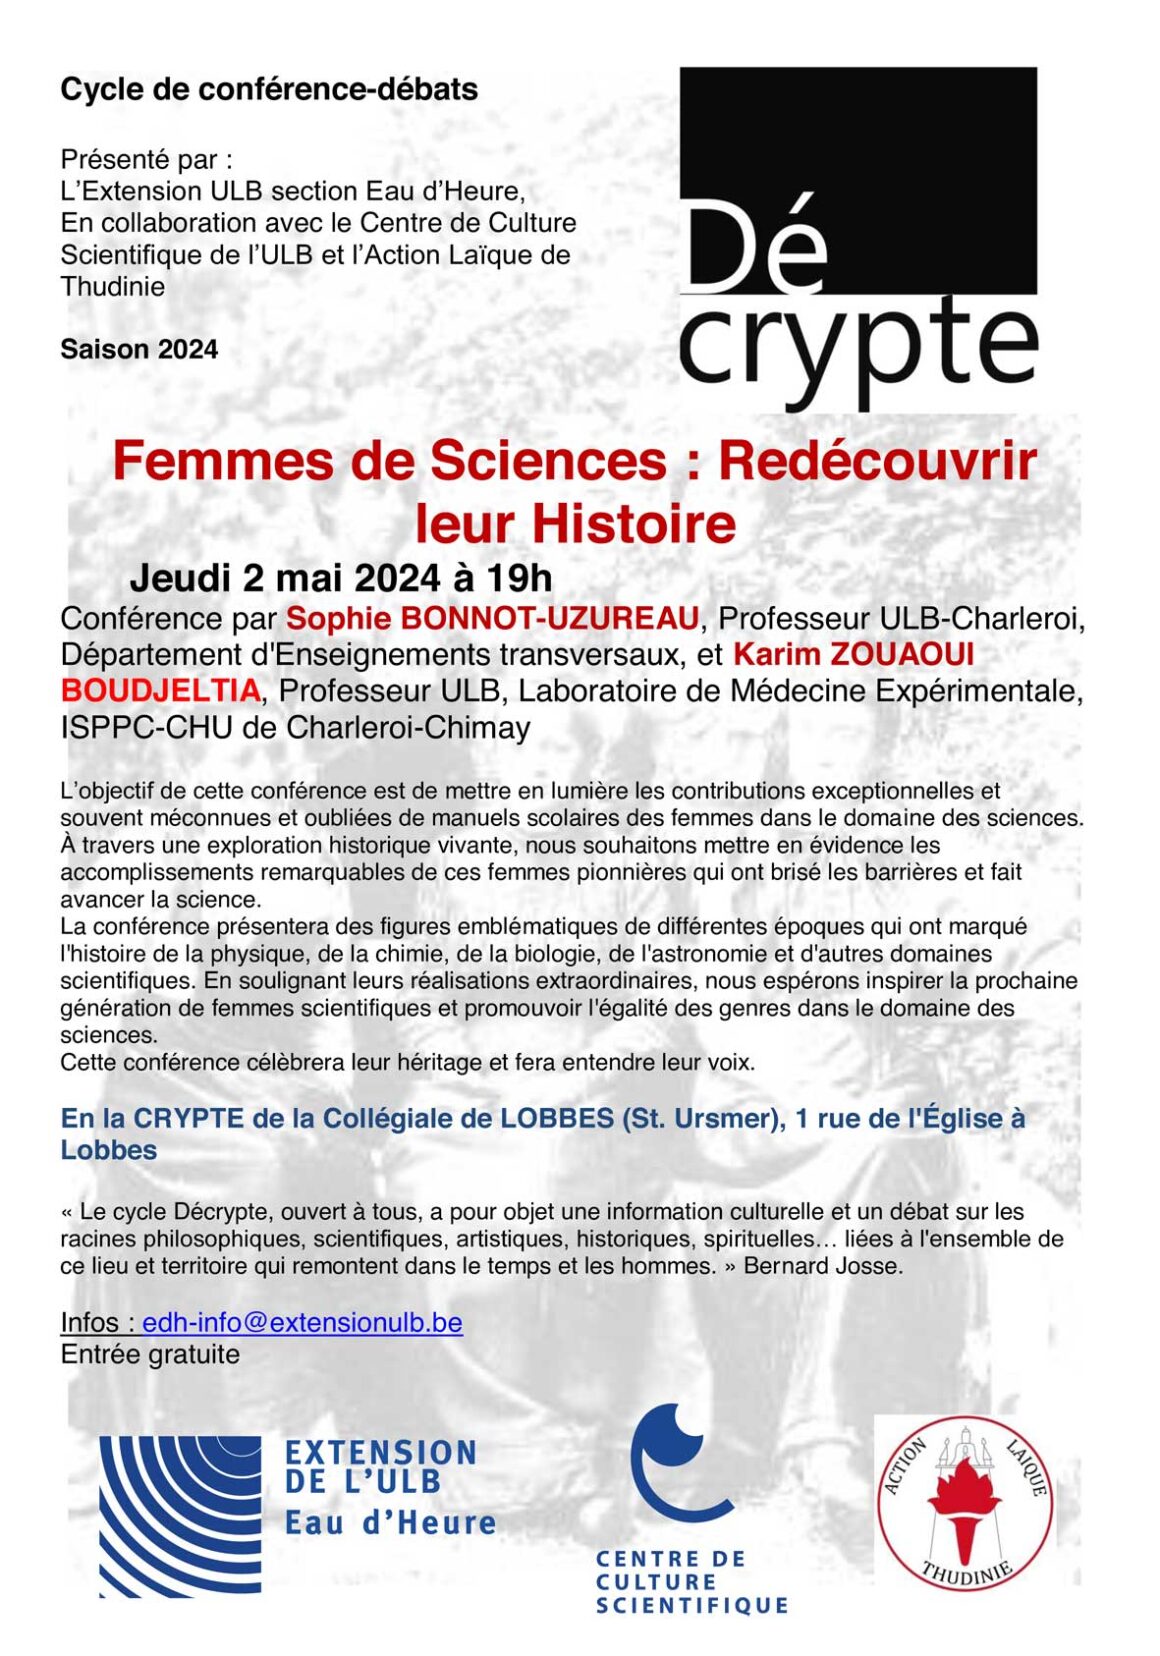 Cycle de conférence-débats – Femmes de Sciences : Redécouvrir leur Histoire